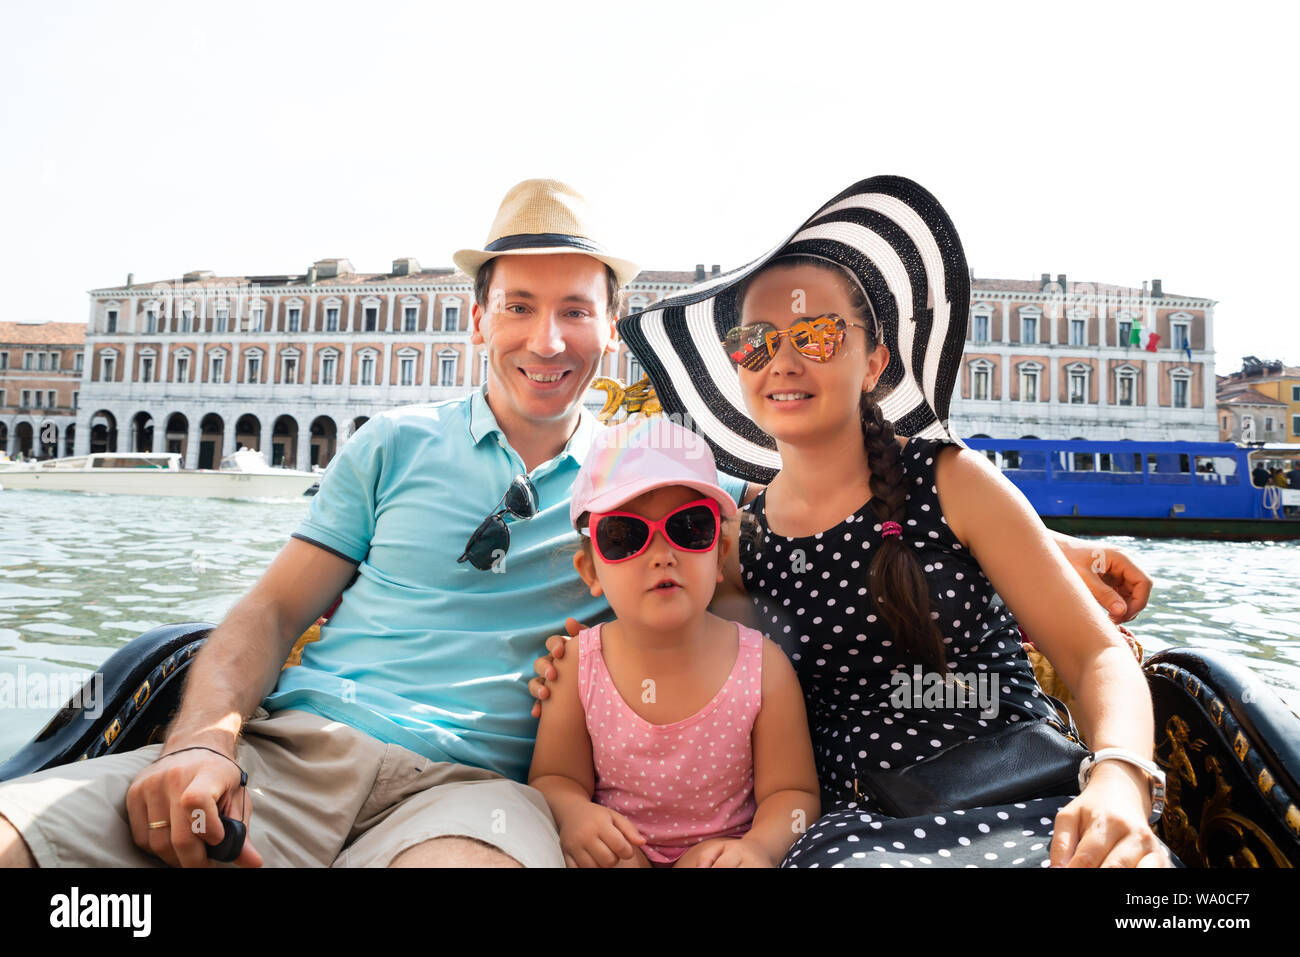 Happy Family On Vacation Sailing In Gondola, Venice Stock Photo